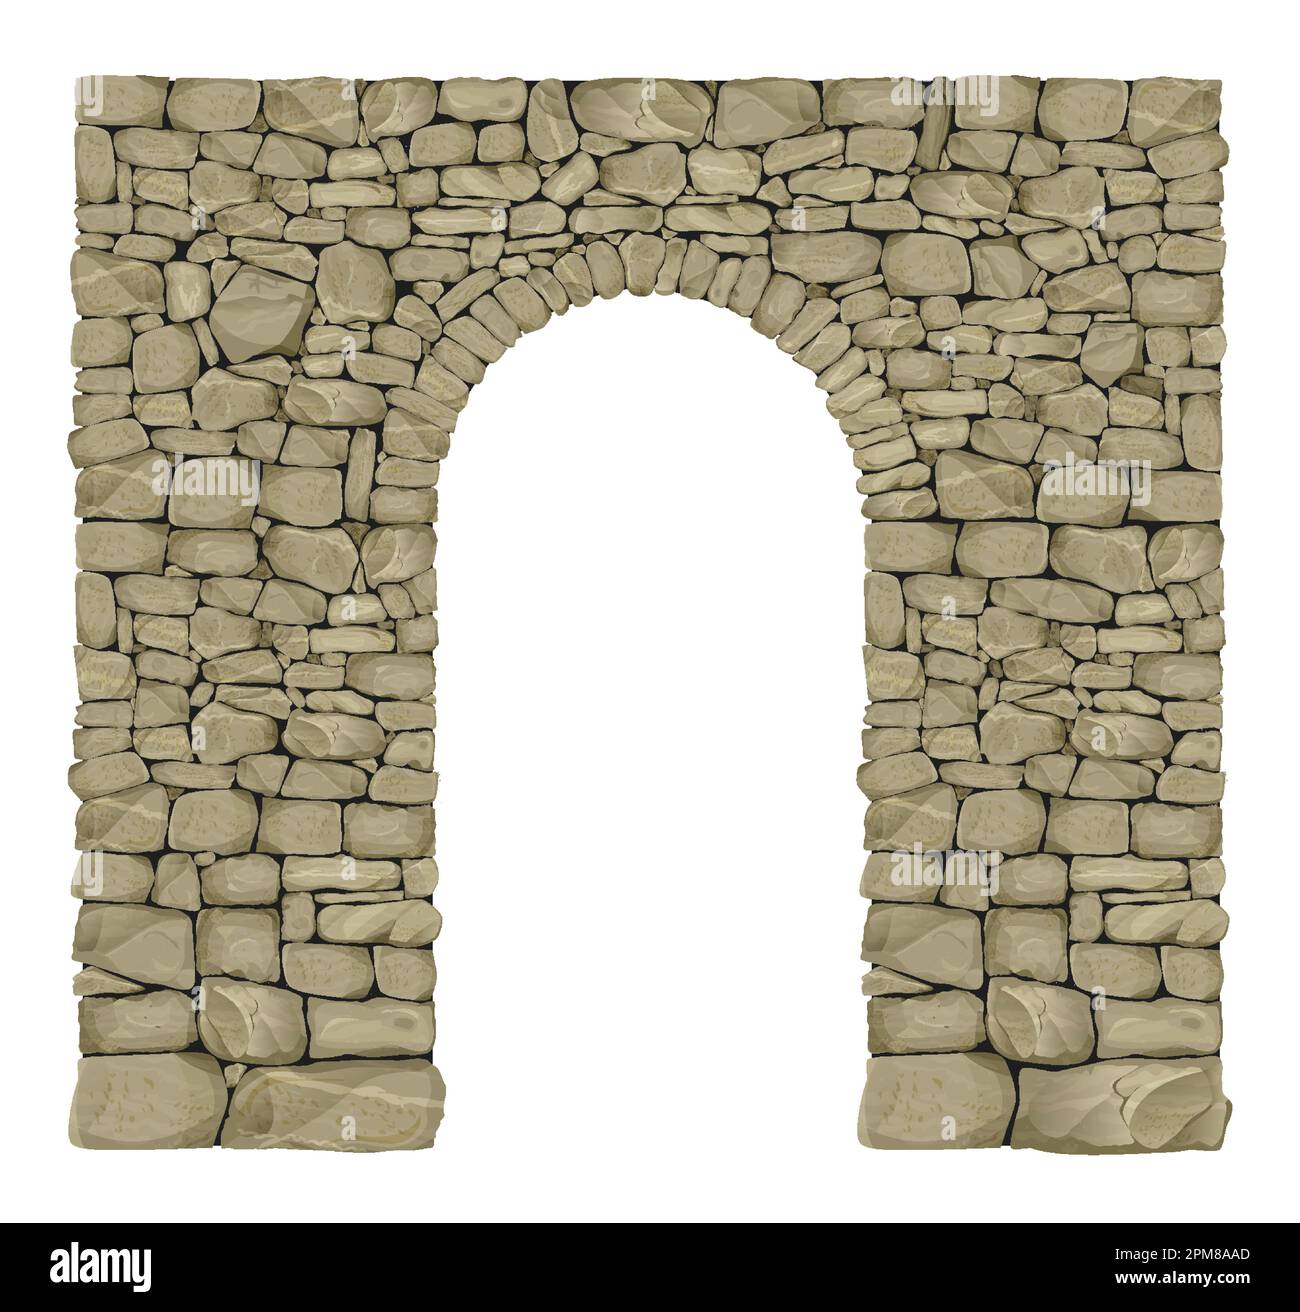 La texture d'une arche en pierre sauvage Illustration de Vecteur